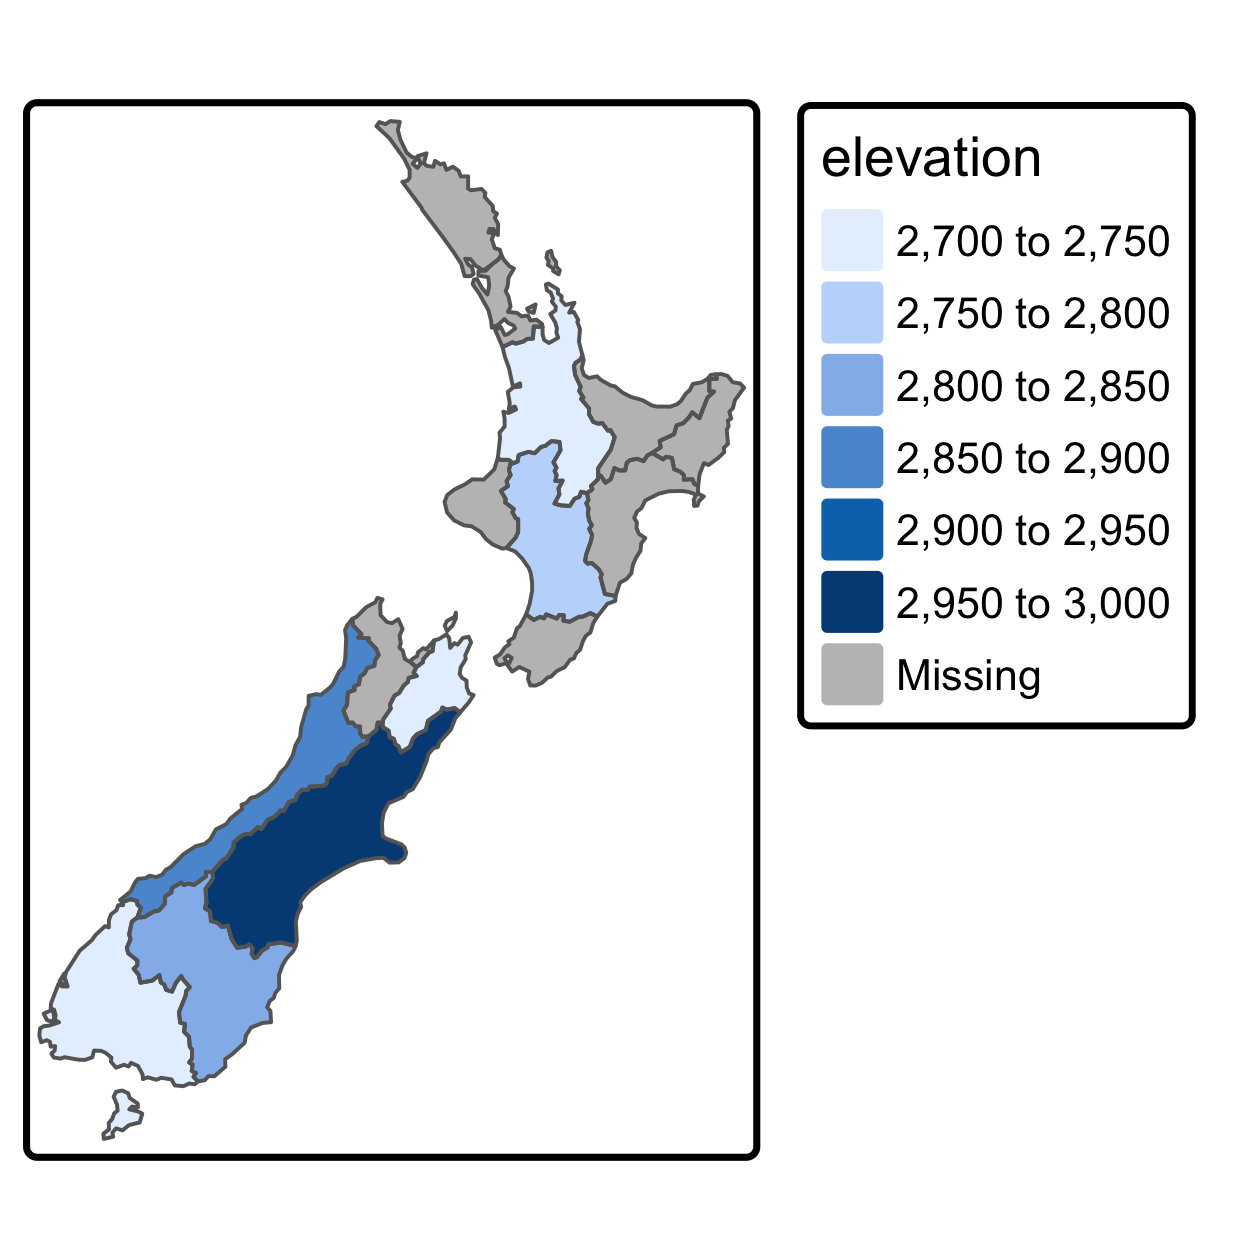 New Zealand の各地域の上位 101 の高さの平均値。